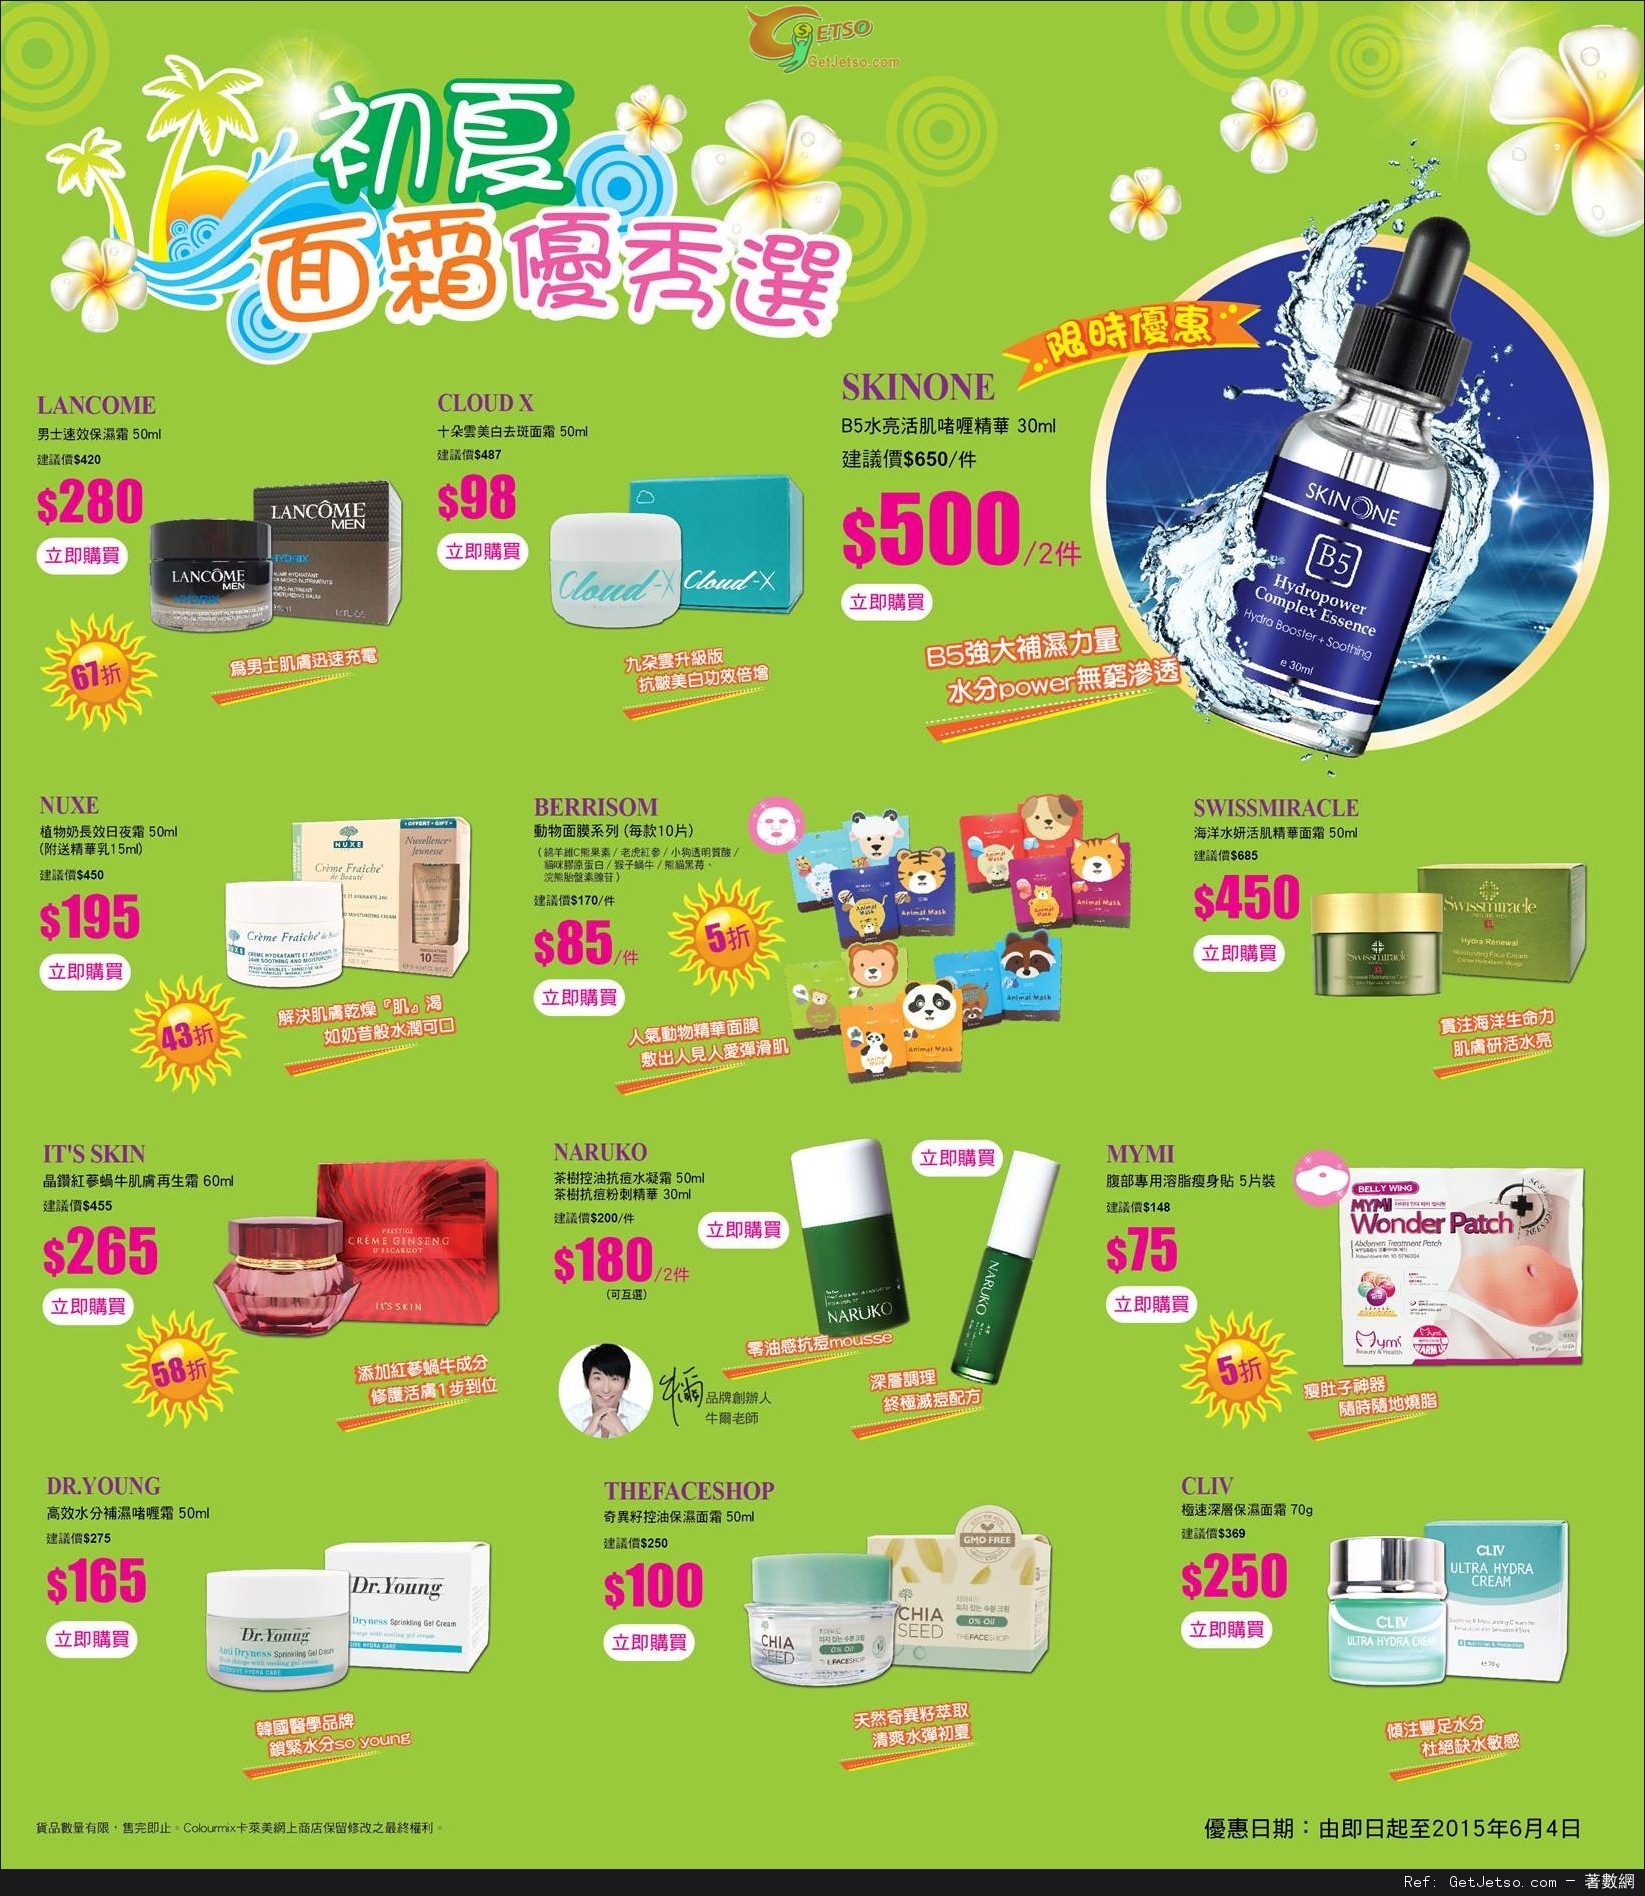 Colourmix 卡萊美初夏面霜優秀選購物優惠(至15年6月4日)圖片1